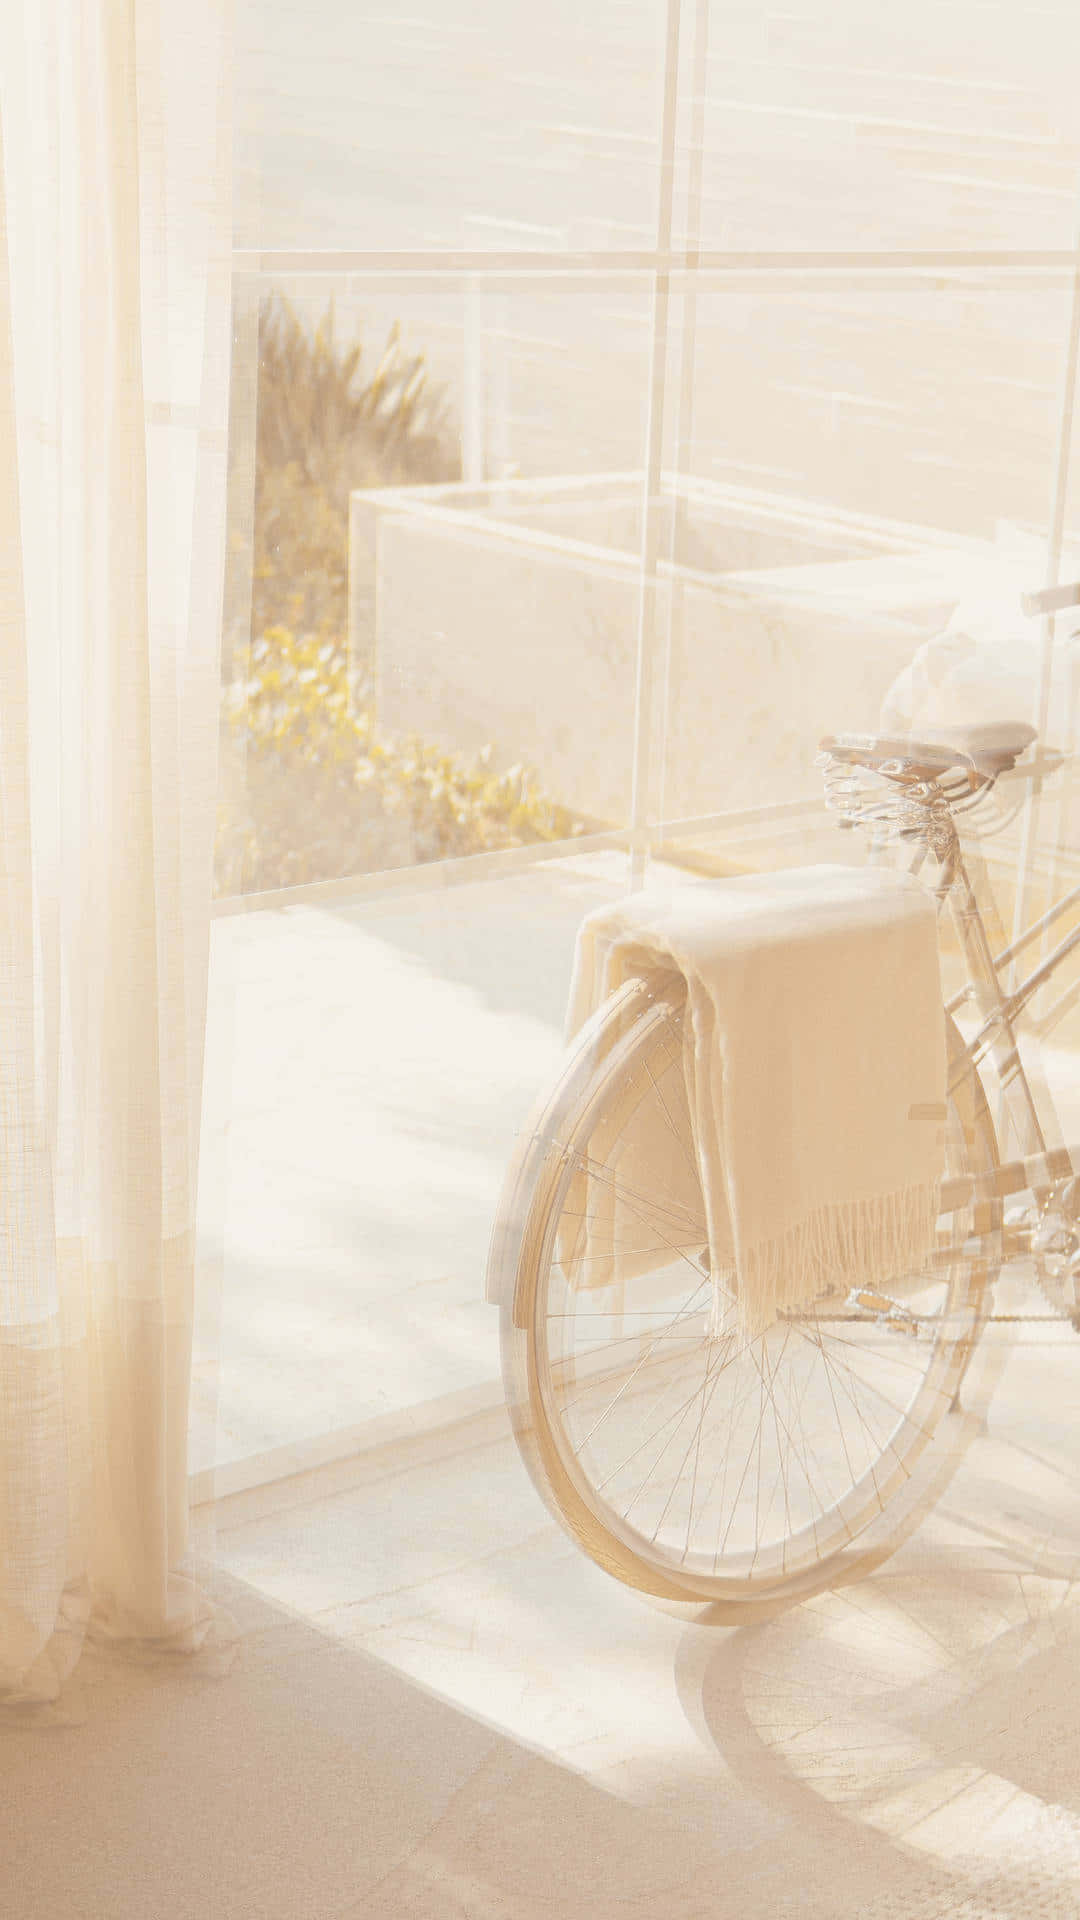 Beige Bicycle Sunlit Room Wallpaper